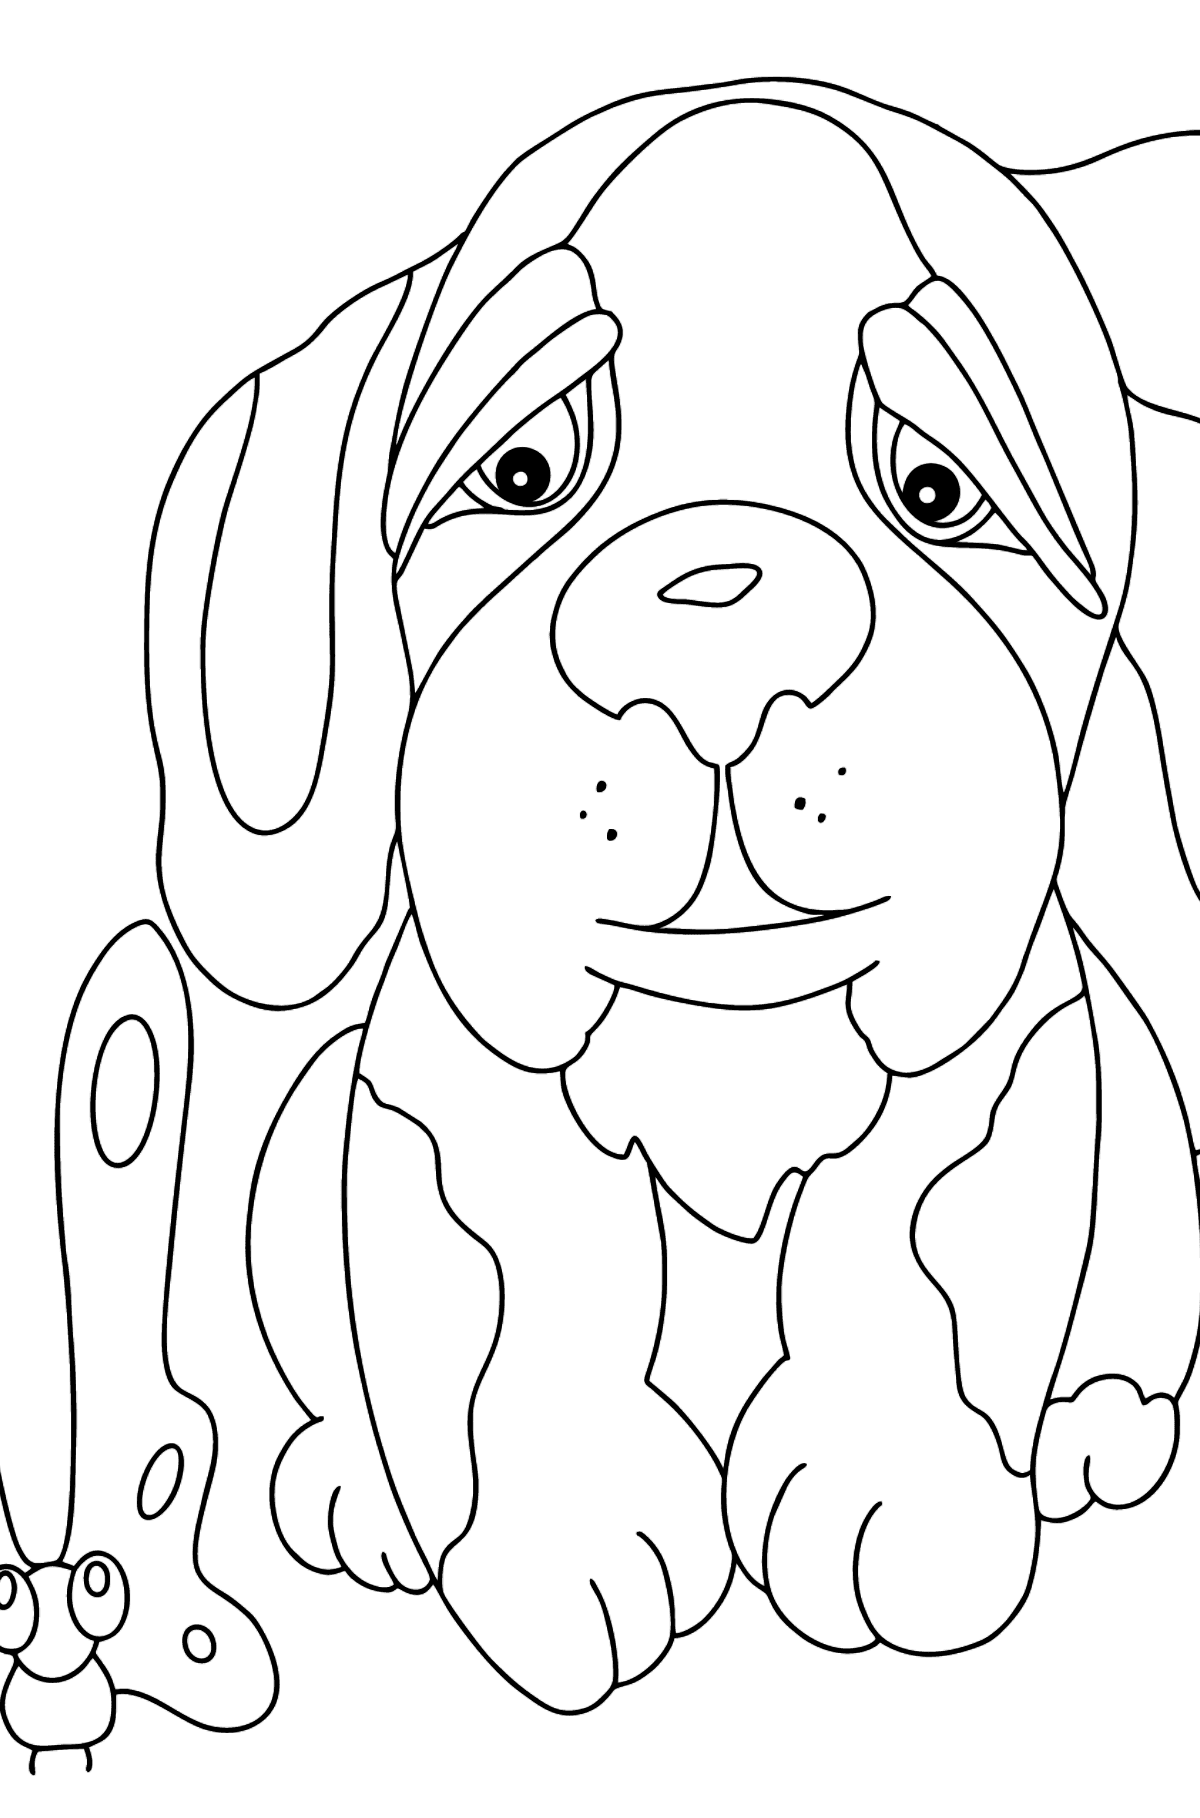 Dibujo para Colorear - Un Perro Viendo a una Mariposa - Dibujos para Colorear para Niños